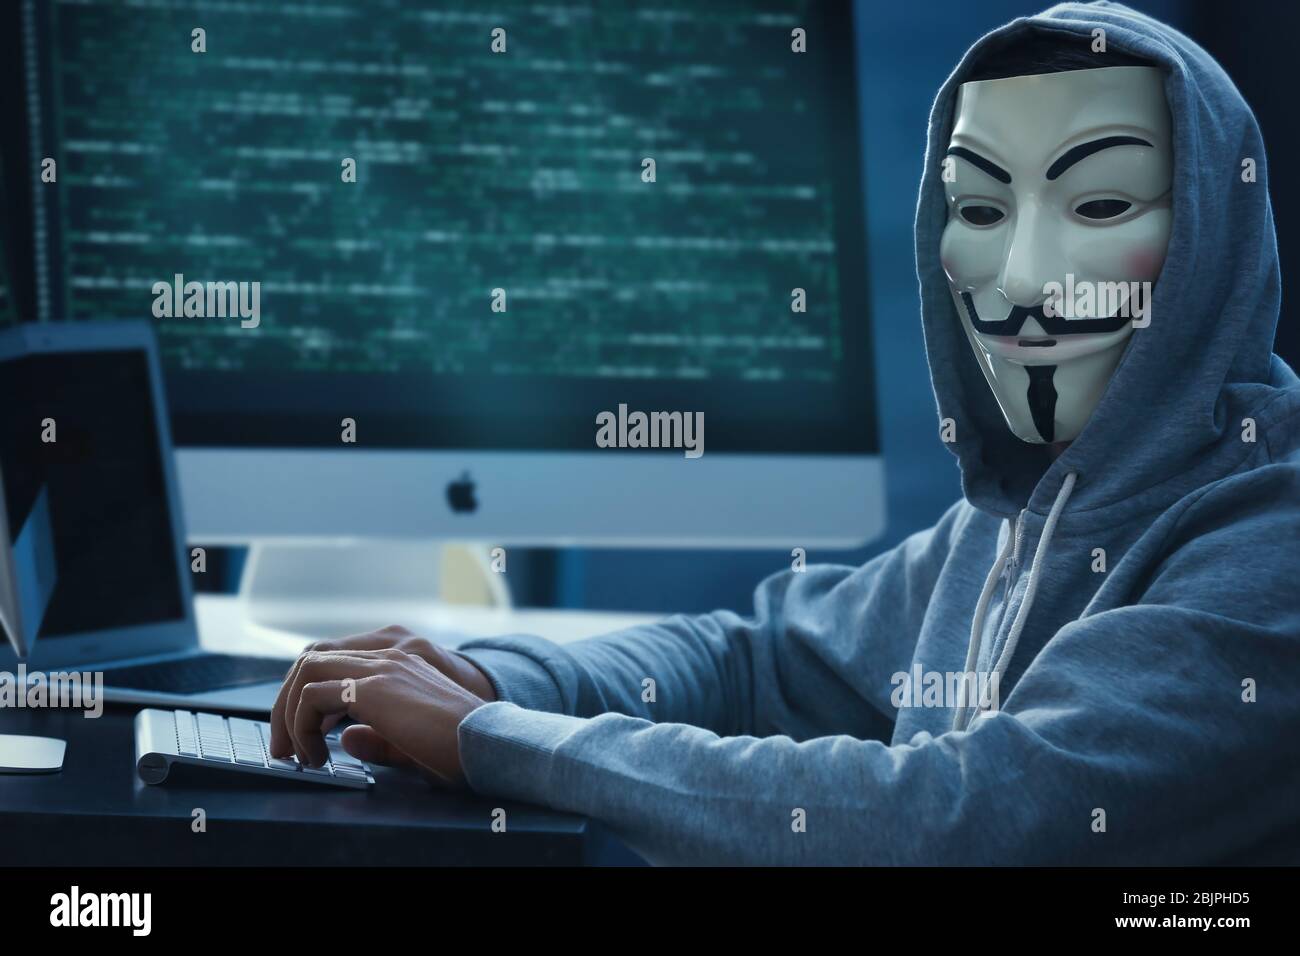 MYKOLAIV, UKRAINE - 29 SEPTEMBRE 2017: Personne anonyme dans le masque Guy Fawkes utilisant l'ordinateur à l'intérieur Banque D'Images